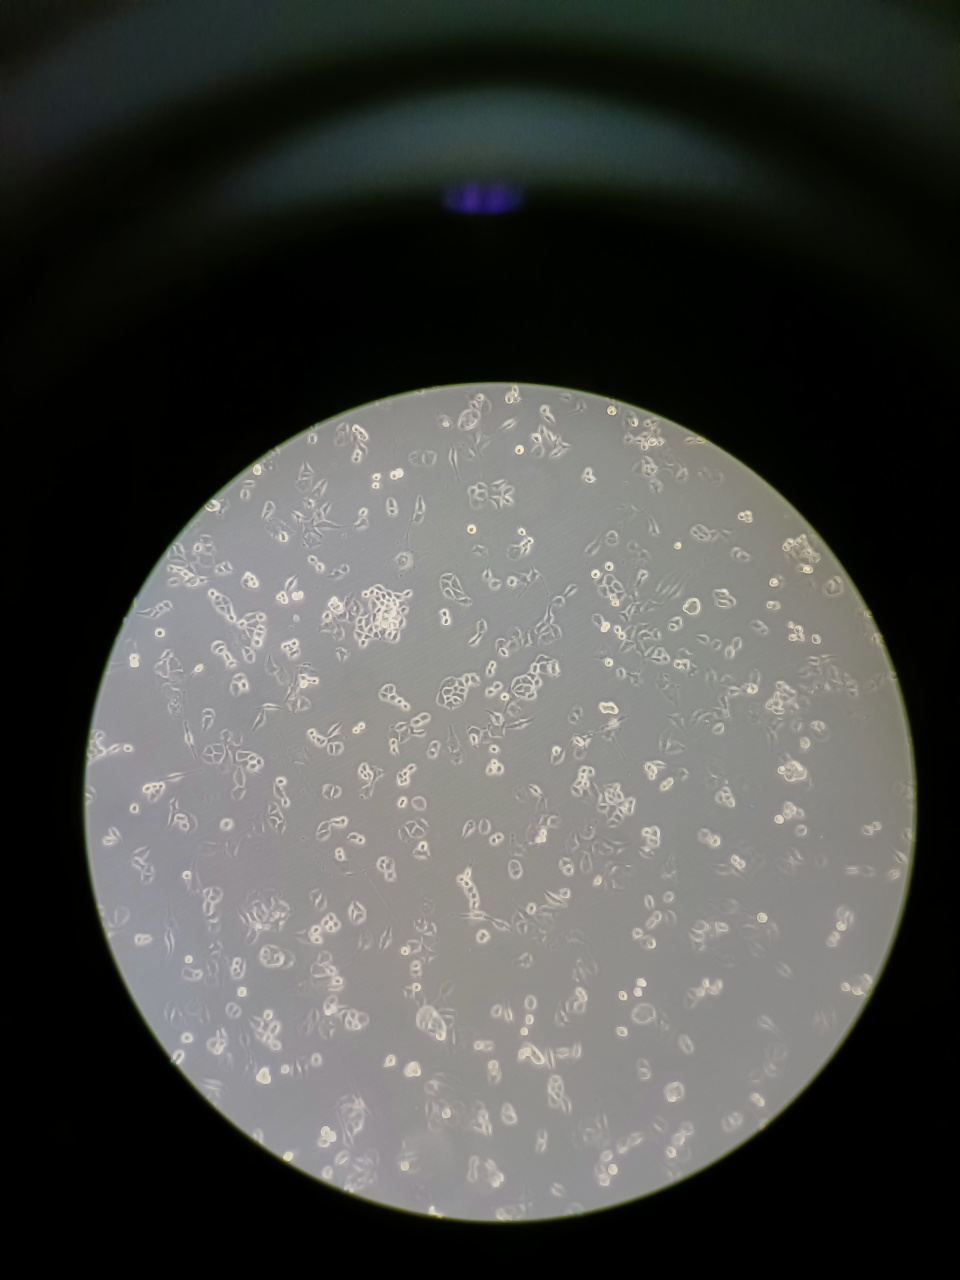 显微镜各种细胞的图片图片